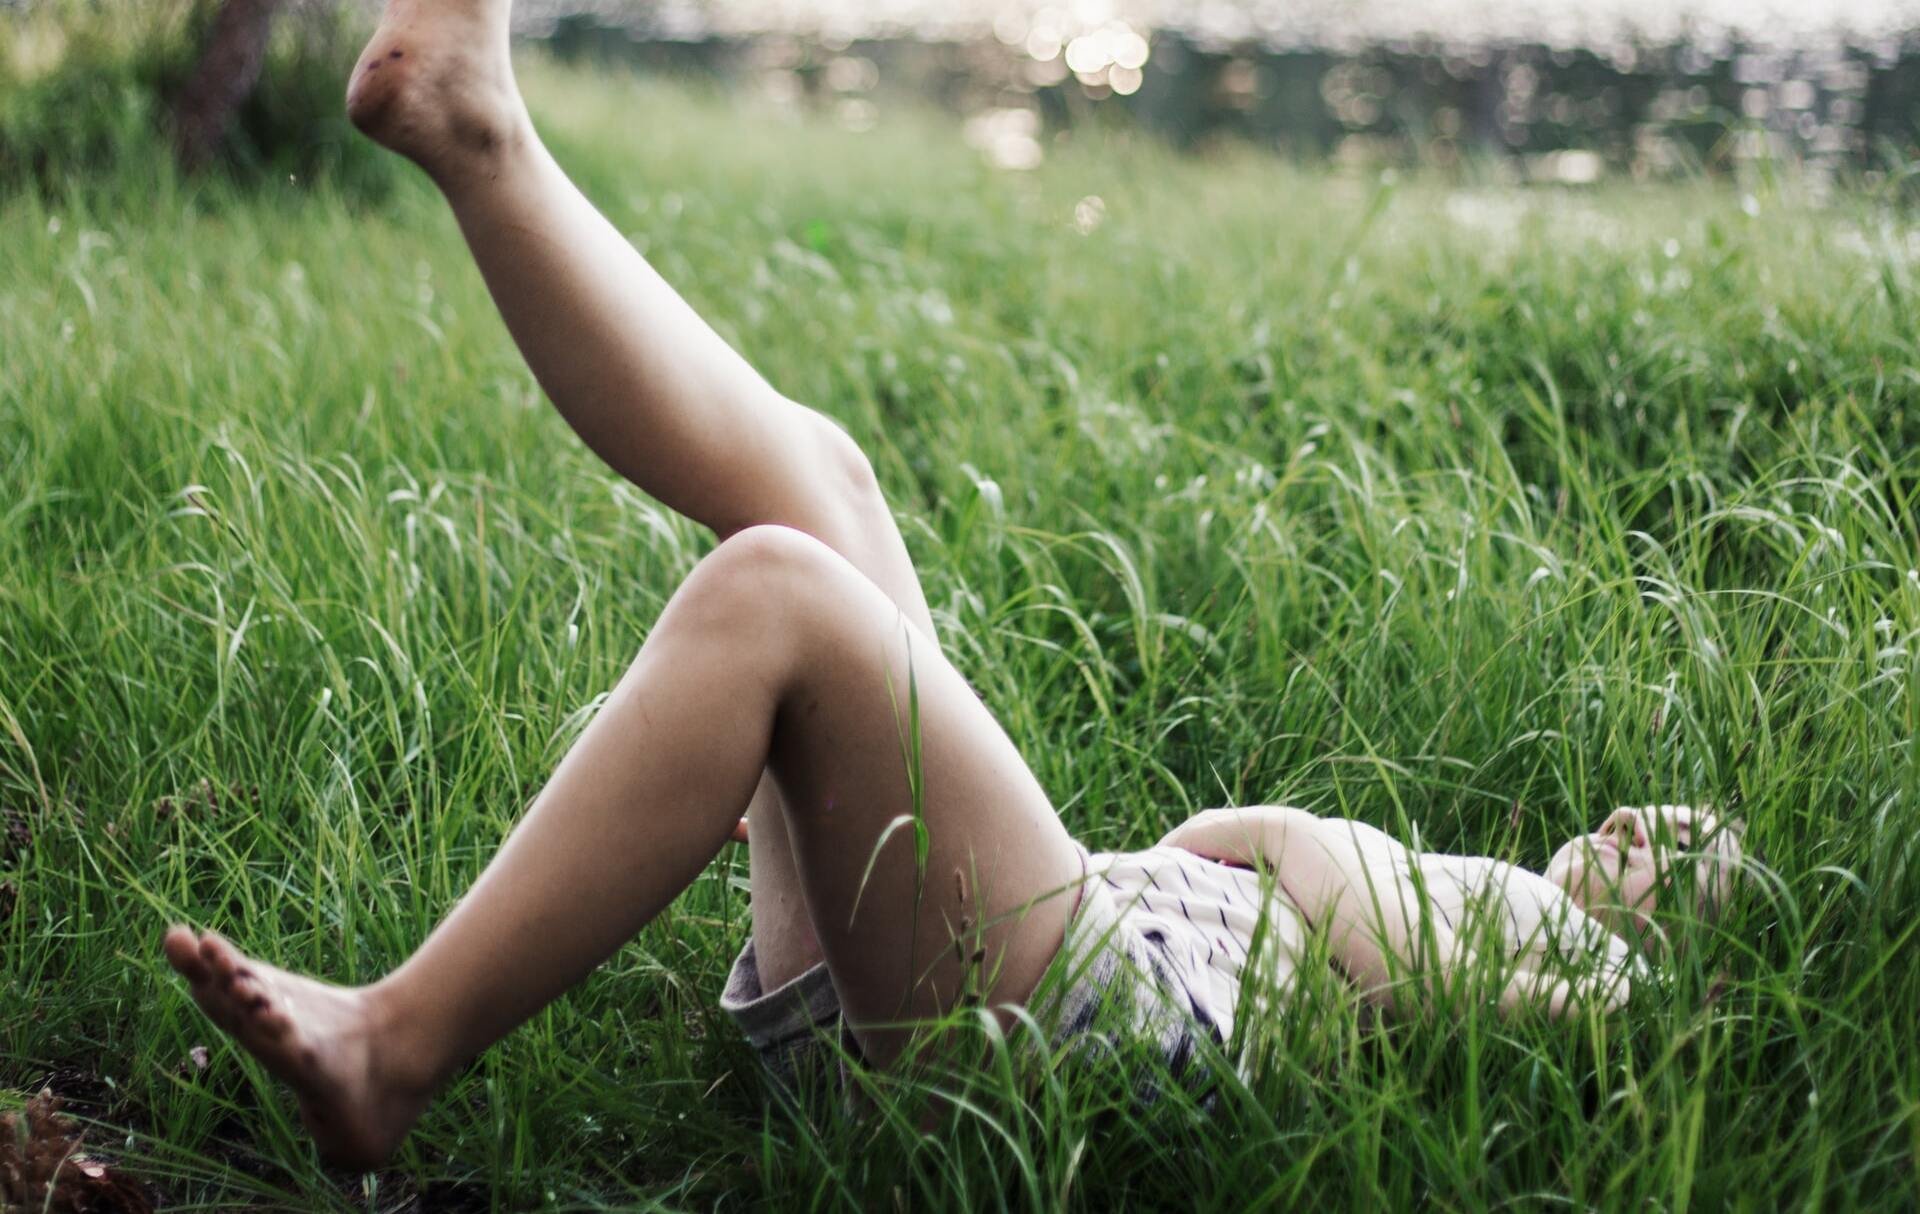 Menina branca deitada na grama alta, com uma de suas pernas levantadas.